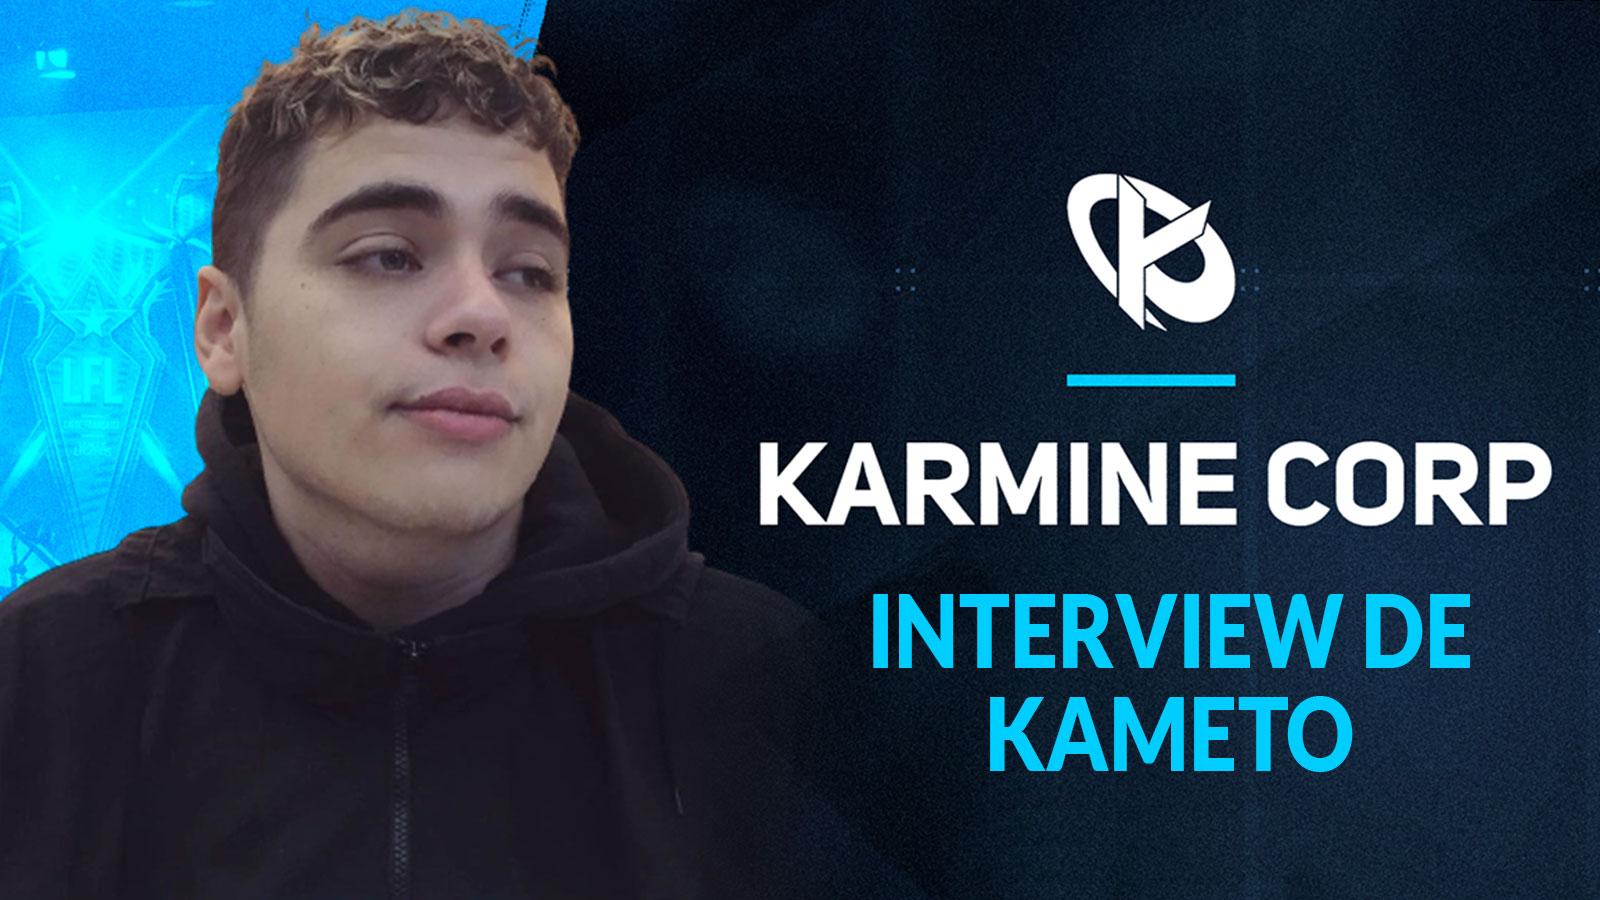 Interview de Kameto à propos de la Karmine Corp